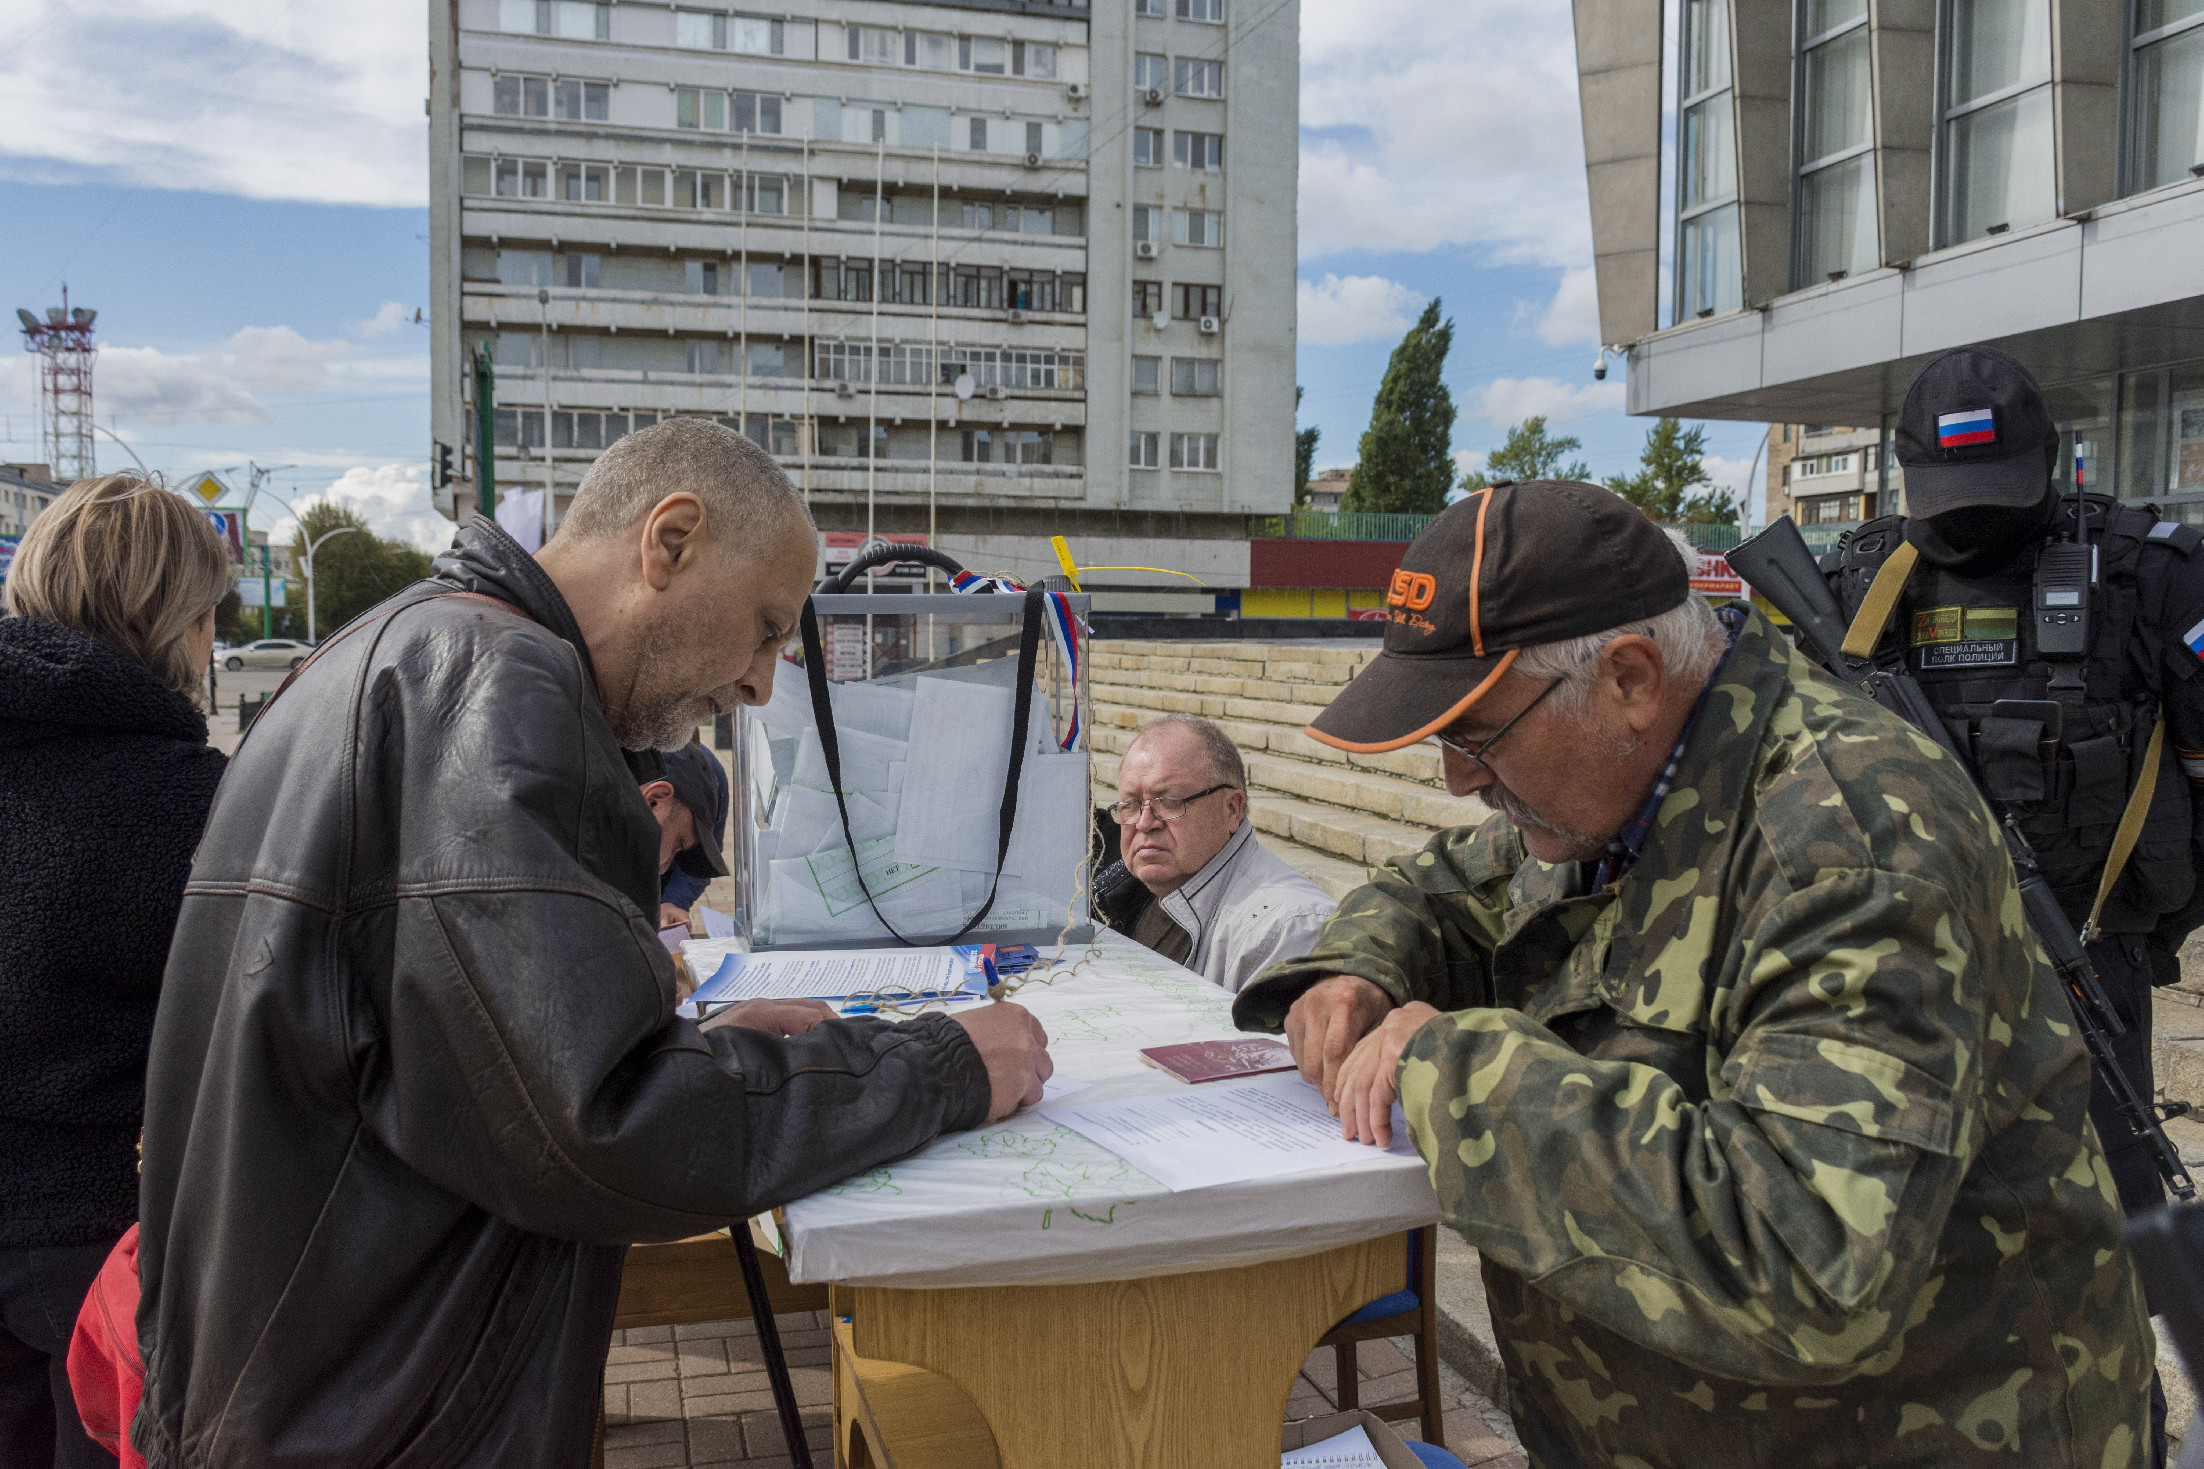 Kelet-ukrajnai „népszavazás”: az oroszok már a szavazófülkében vannak